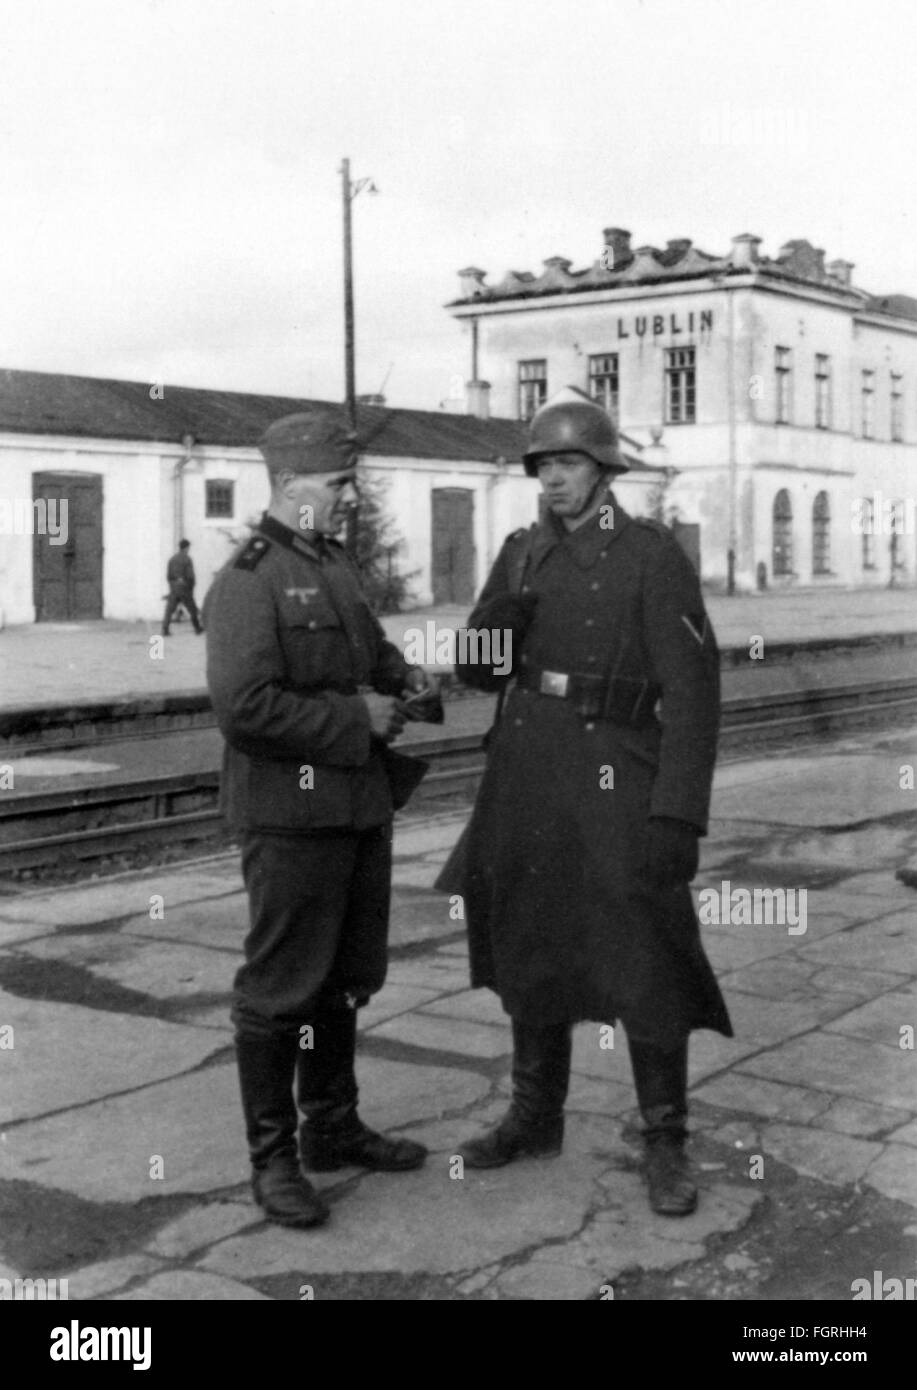 Zweiter Weltkrieg, Polen, deutsche Besatzung, Wachposten am Bahnhof Lublin, um 1940, zusätzliche-Rechte-Abfertigung-nicht vorhanden Stockfoto